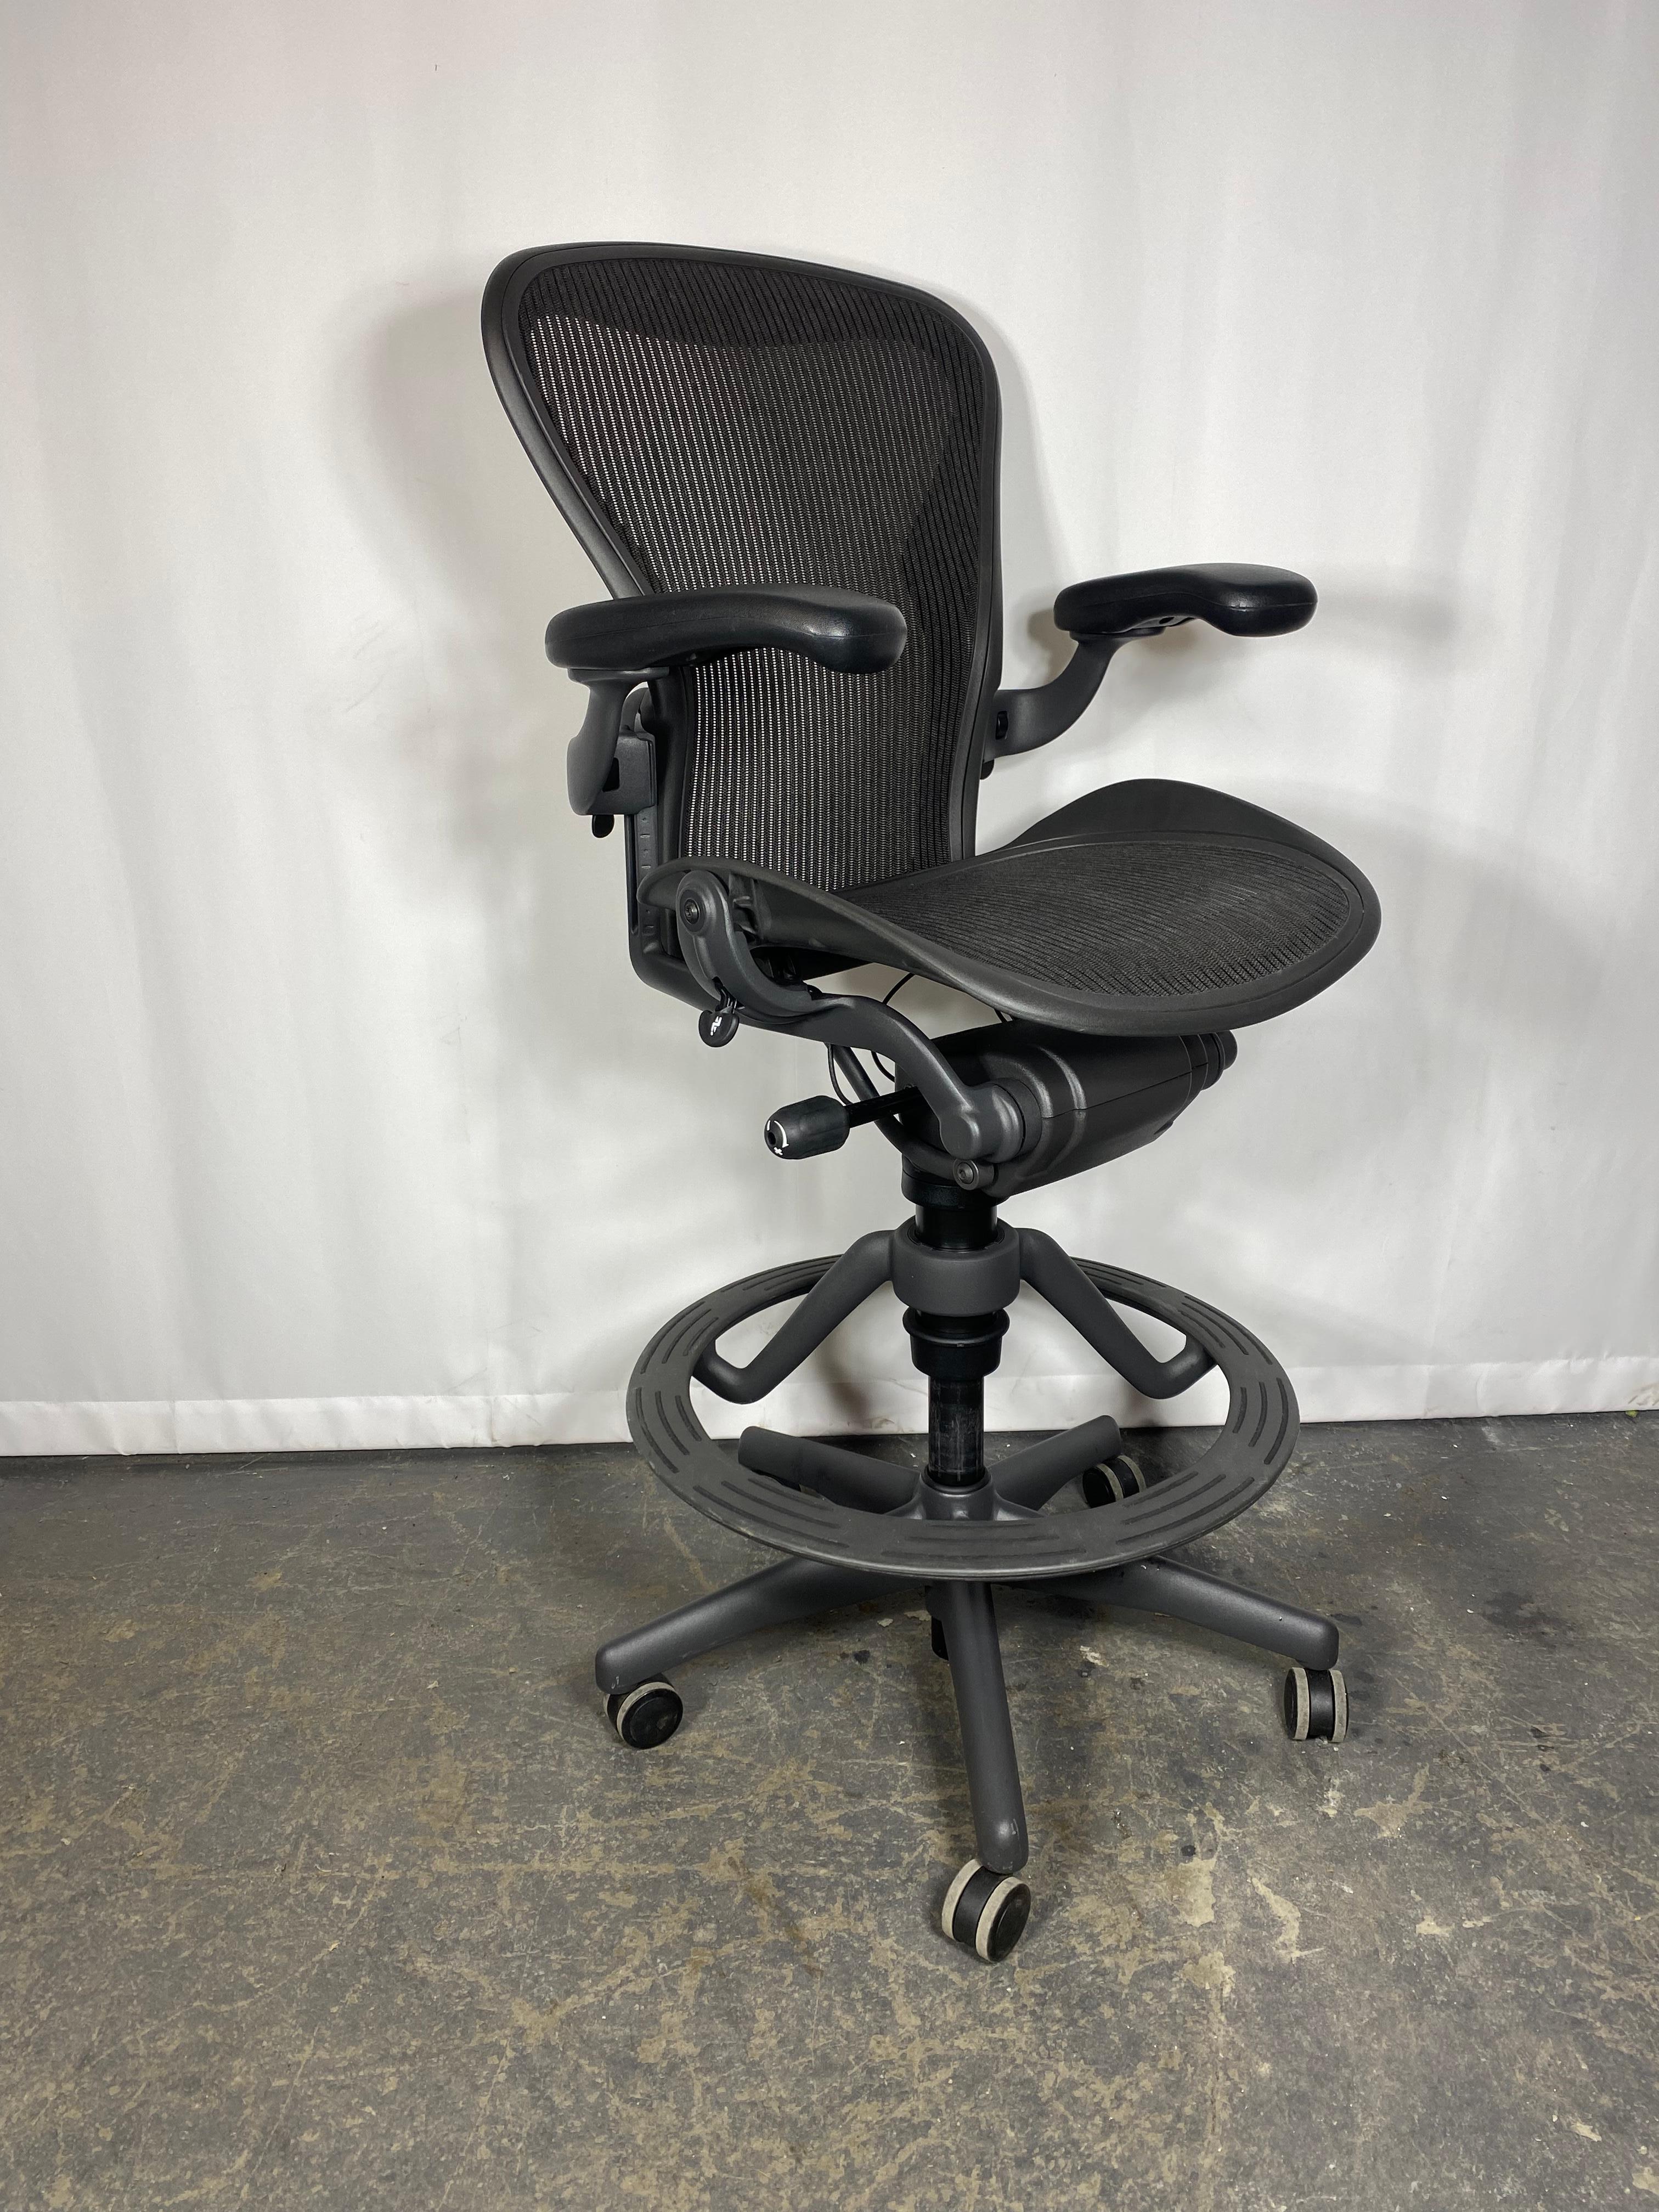 Aeron Chairs sind die modernsten Vertreter der Eleganz und des ergonomischen Designs, die von den kreativen und anspruchsvollen Köpfen bei Herman Miller entwickelt wurden. Der Aeron steht an der Spitze von Luxus und Spitzentechnologie. Dieser Stuhl,